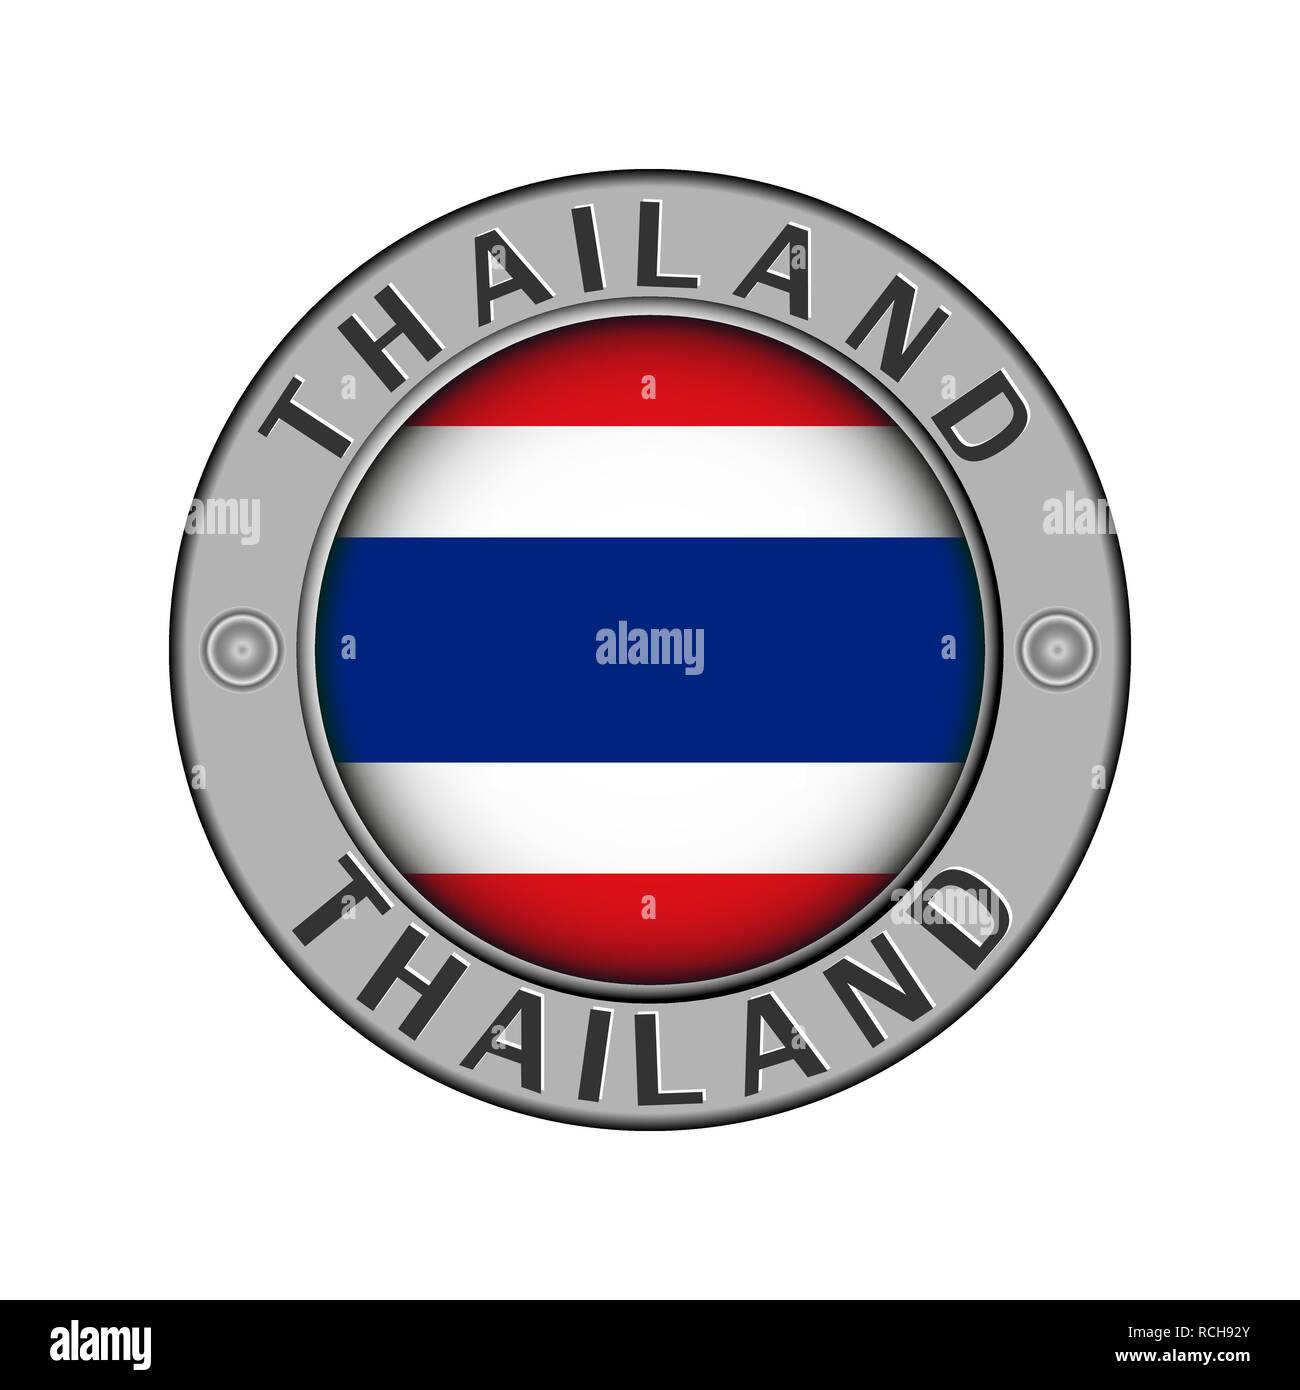 Rotondo di metallo medaglione con il nome del paese in Thailandia e un indicatore rotondo nel centro Illustrazione Vettoriale